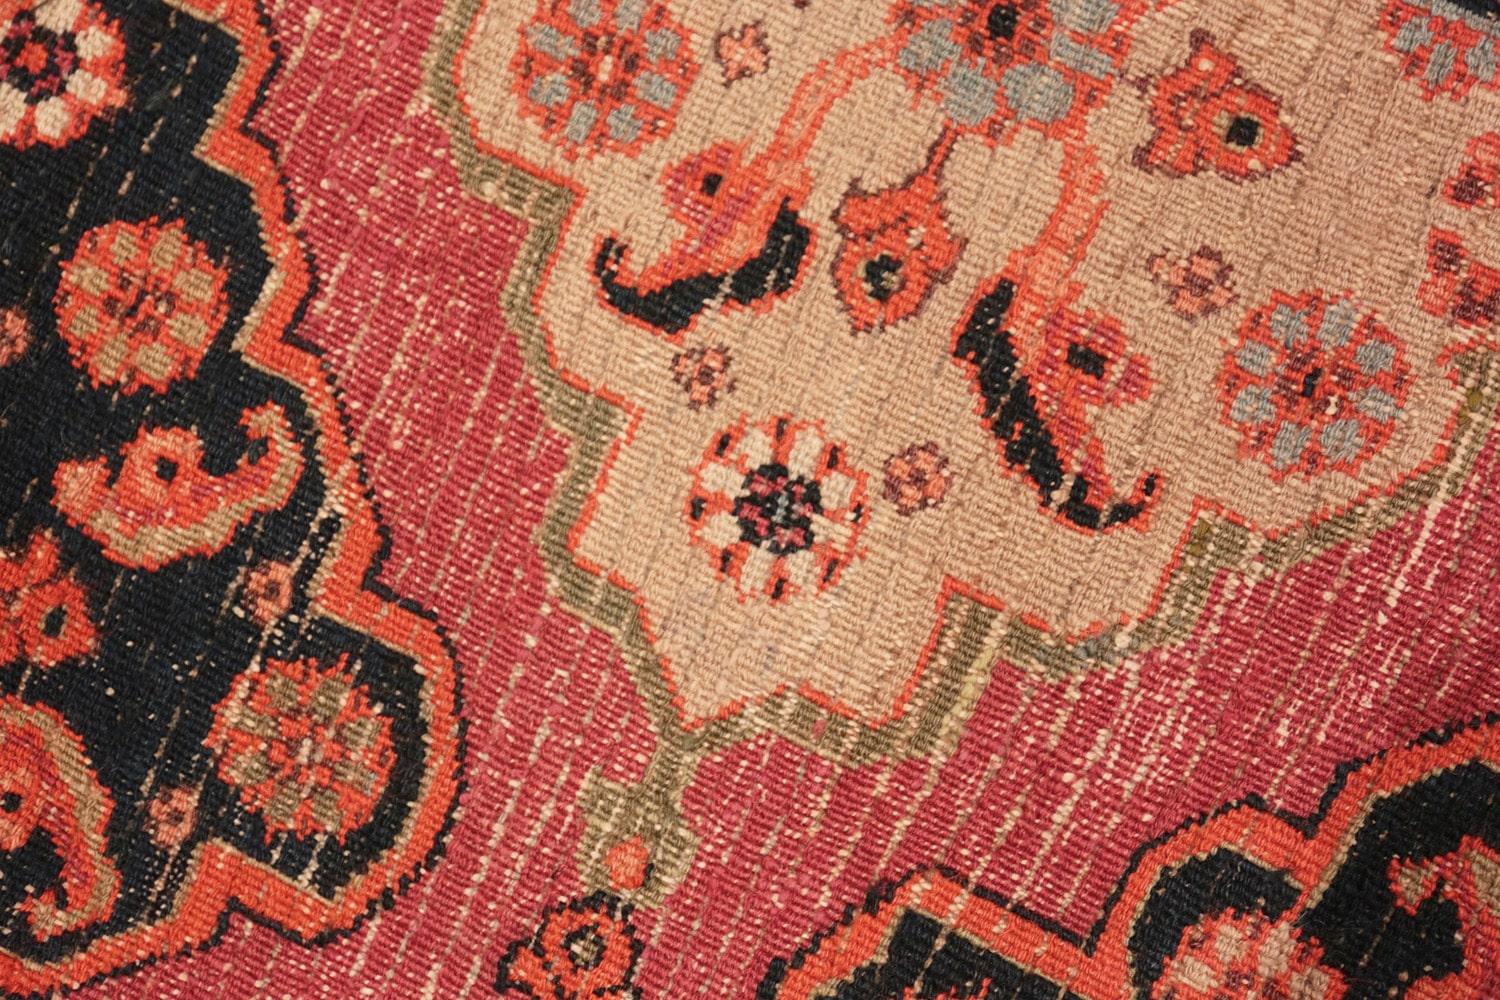 Antique Persian Khorassan Carpet. Size: 11' 9